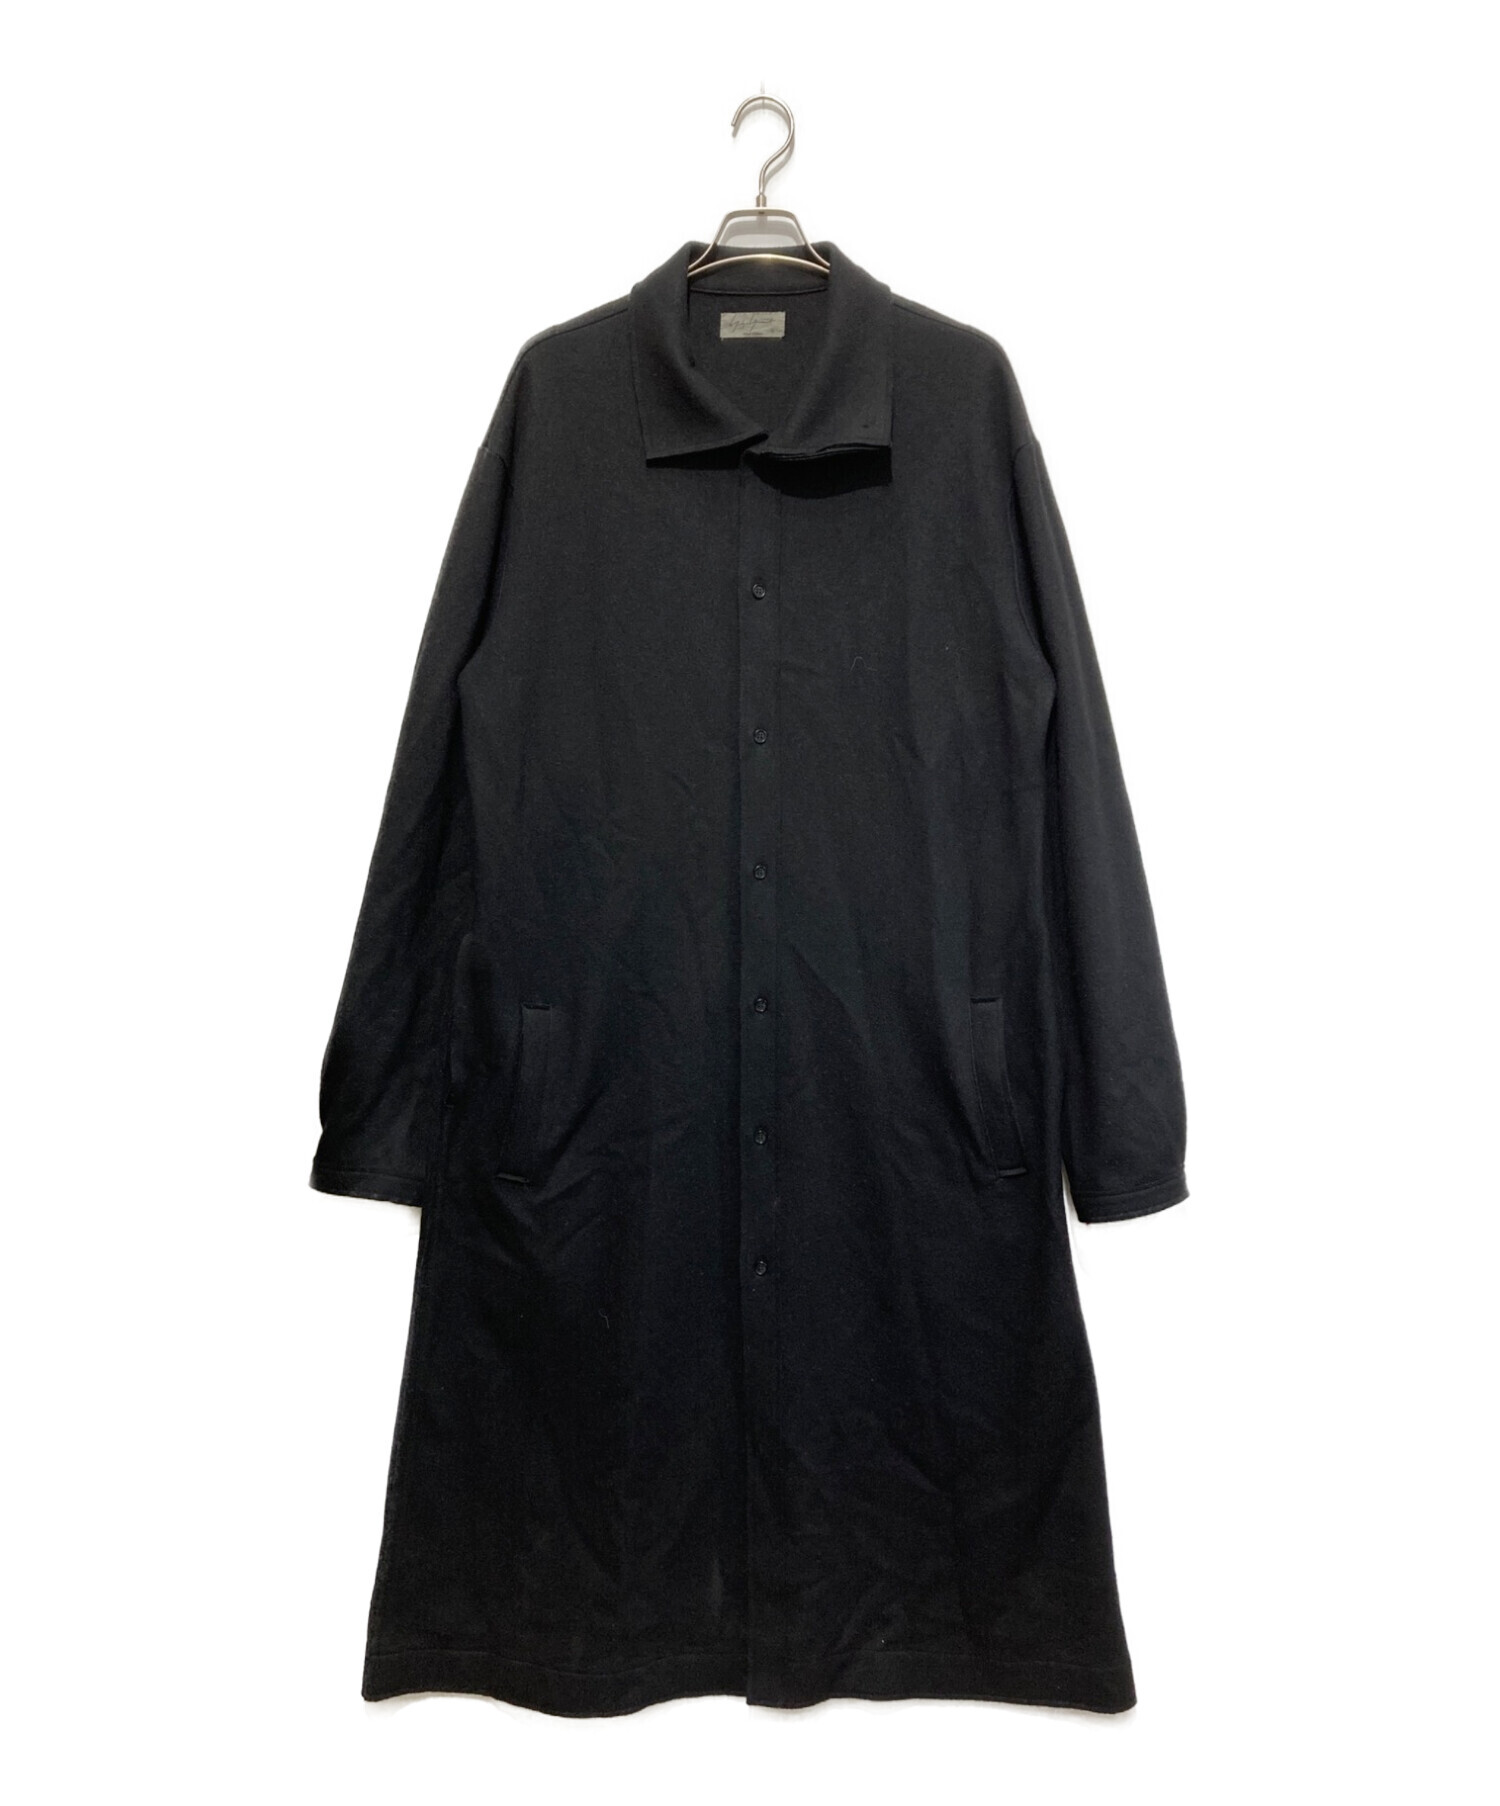 Yohji Yamamoto pour homme (ヨウジヤマモト プールオム) ウールコート ブラック サイズ:表記なし